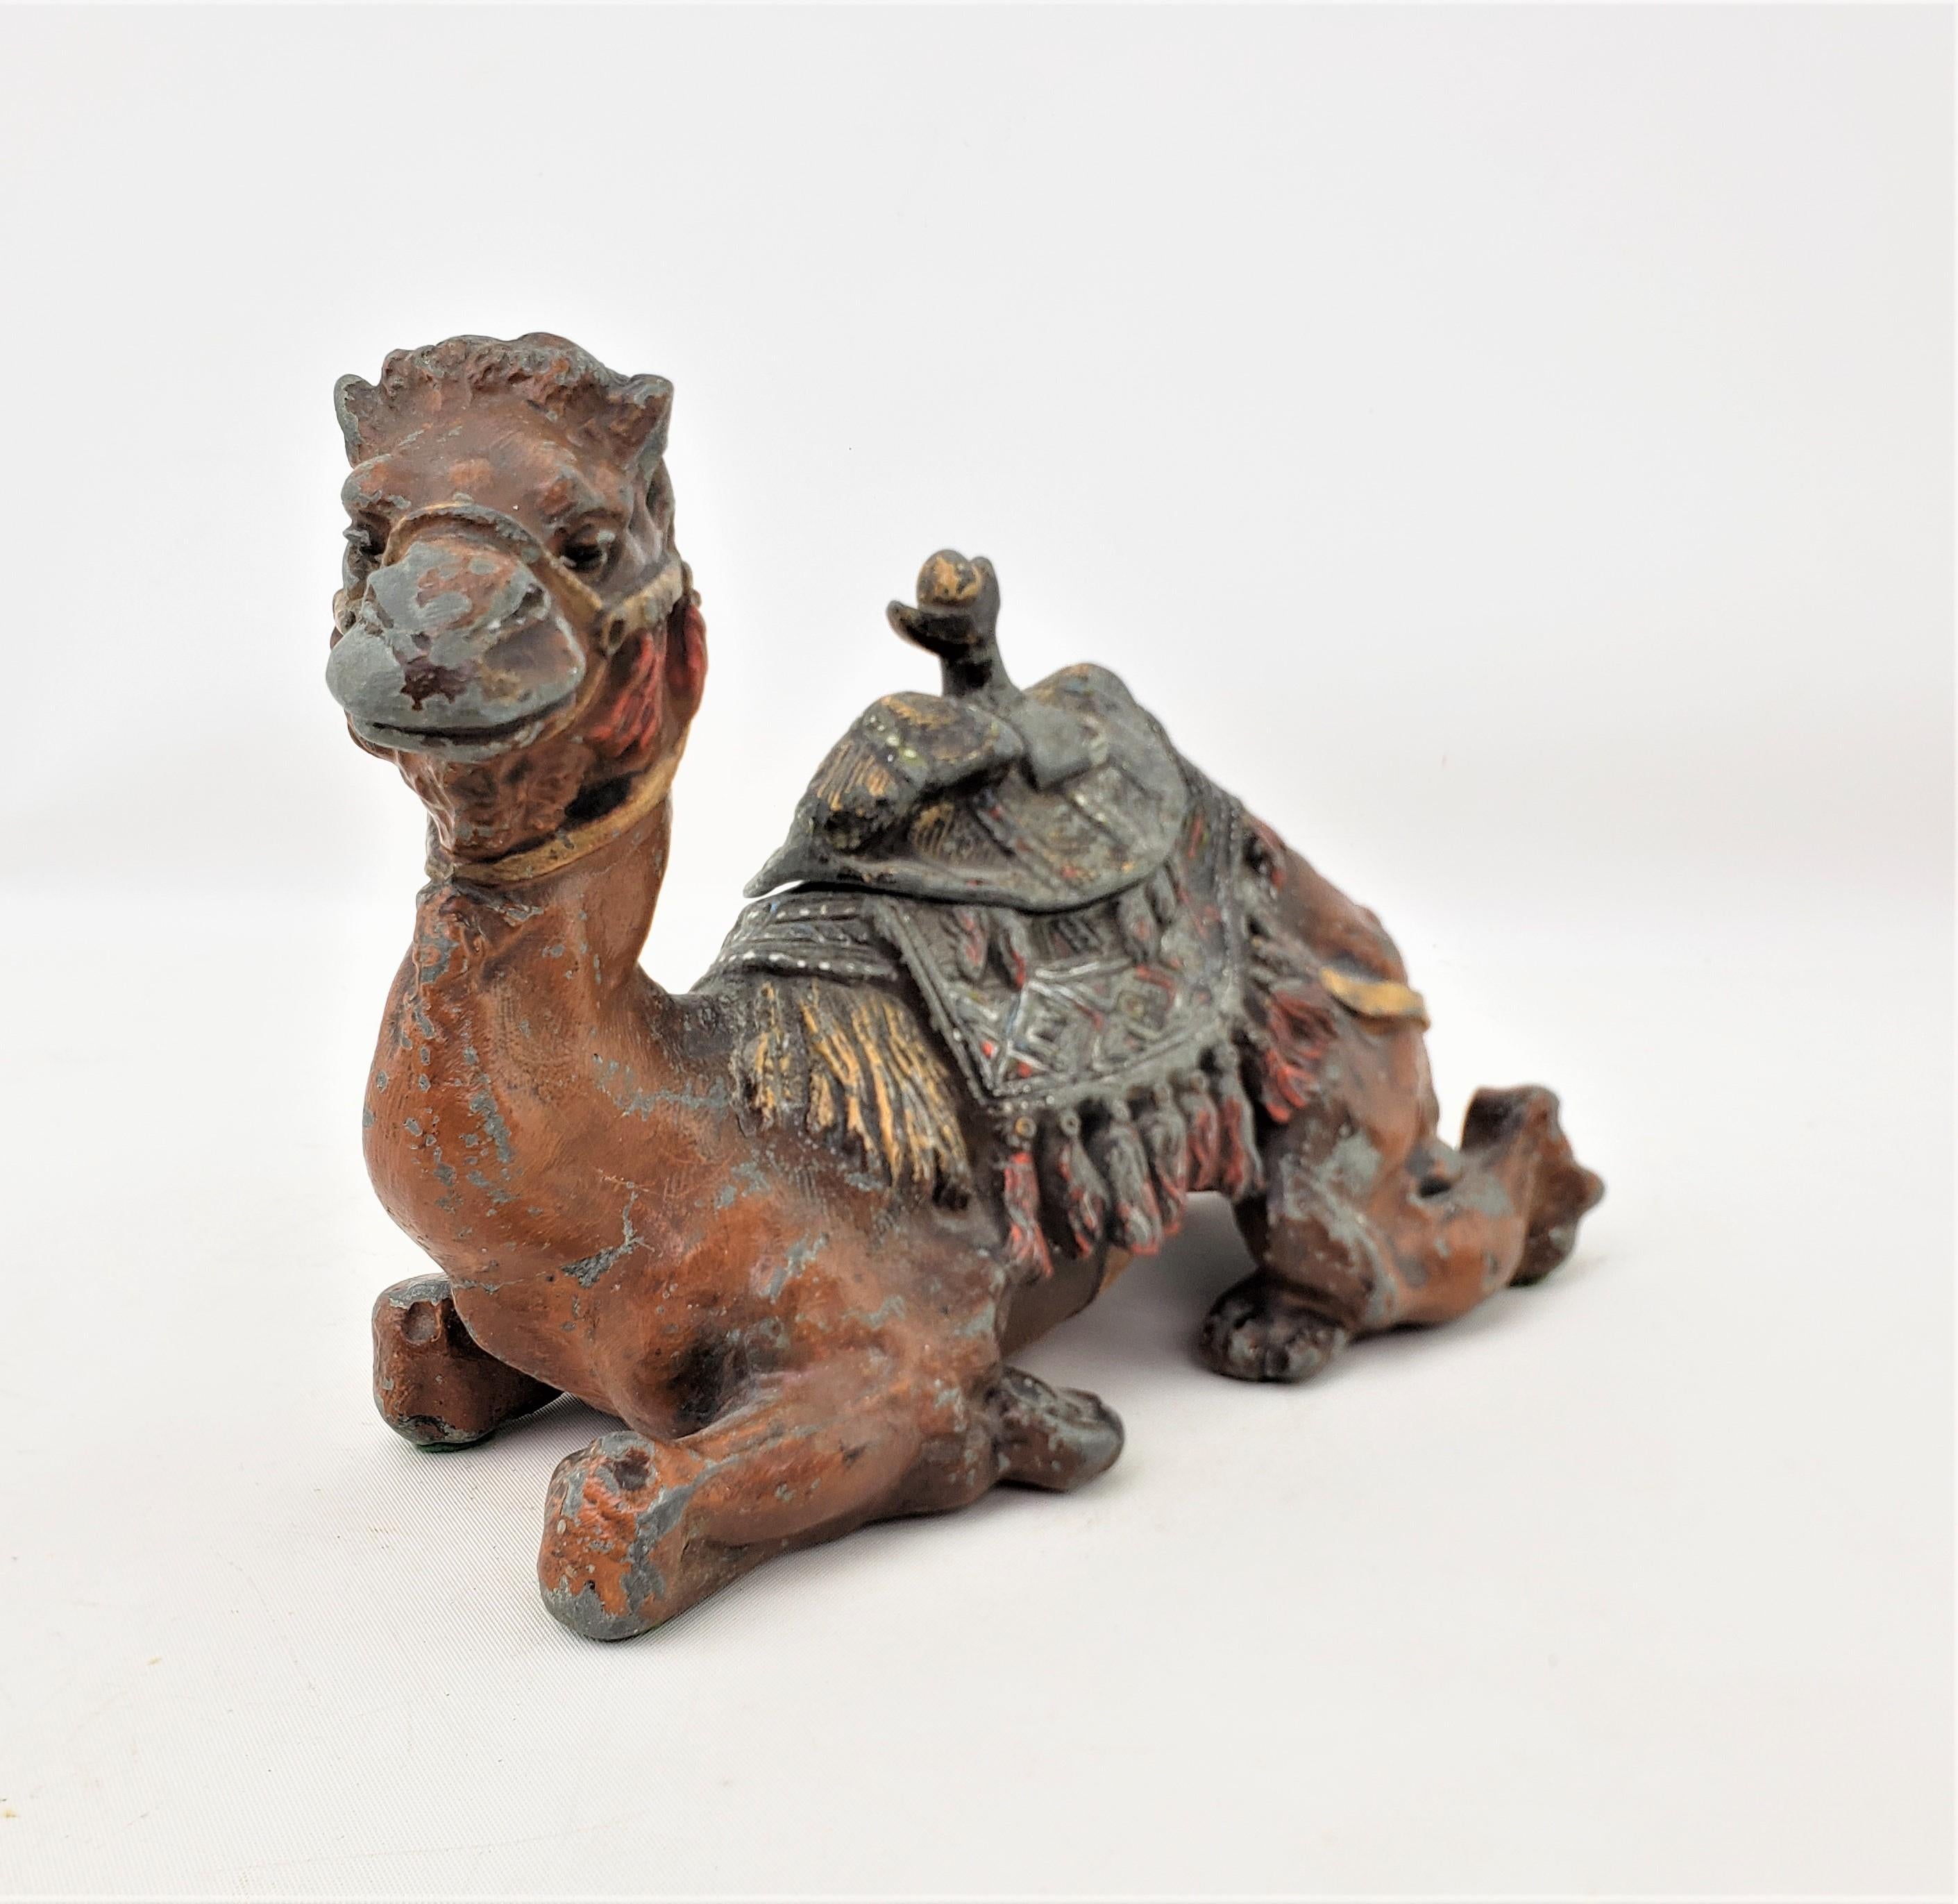 Cet encrier antique moulé et peint à froid n'a pas de marque de fabricant, mais on suppose qu'il provient d'Autriche et qu'il date d'environ 1900. Il est réalisé dans le style anglo-indien. Cette figurine de chameau assis a été peinte à la main dans